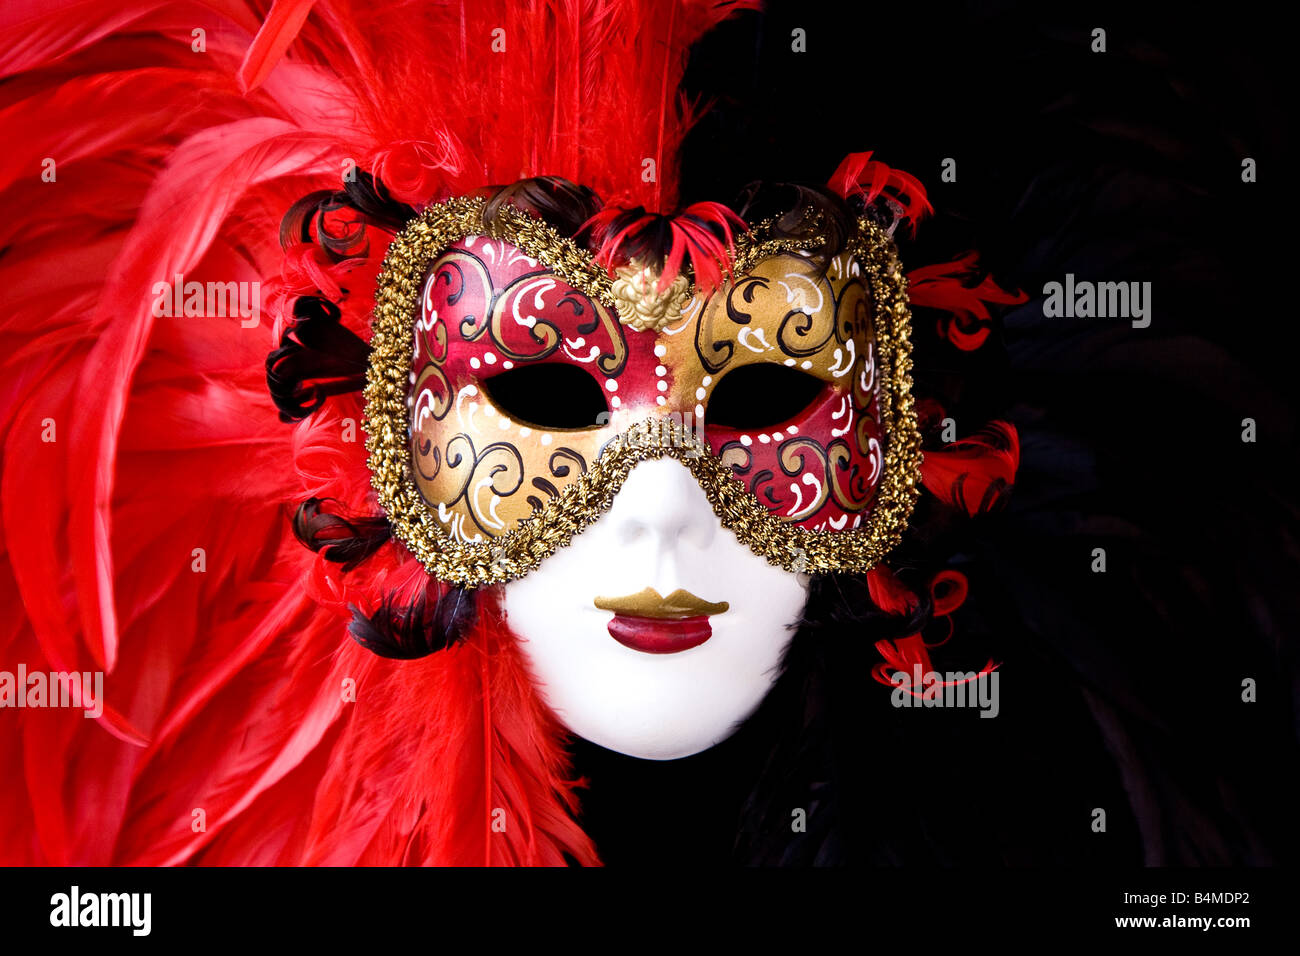 Rouge et typiquement vénitien masque noir avec des plumes et de jolis détails Venise Vénétie Italie Europe EU Banque D'Images